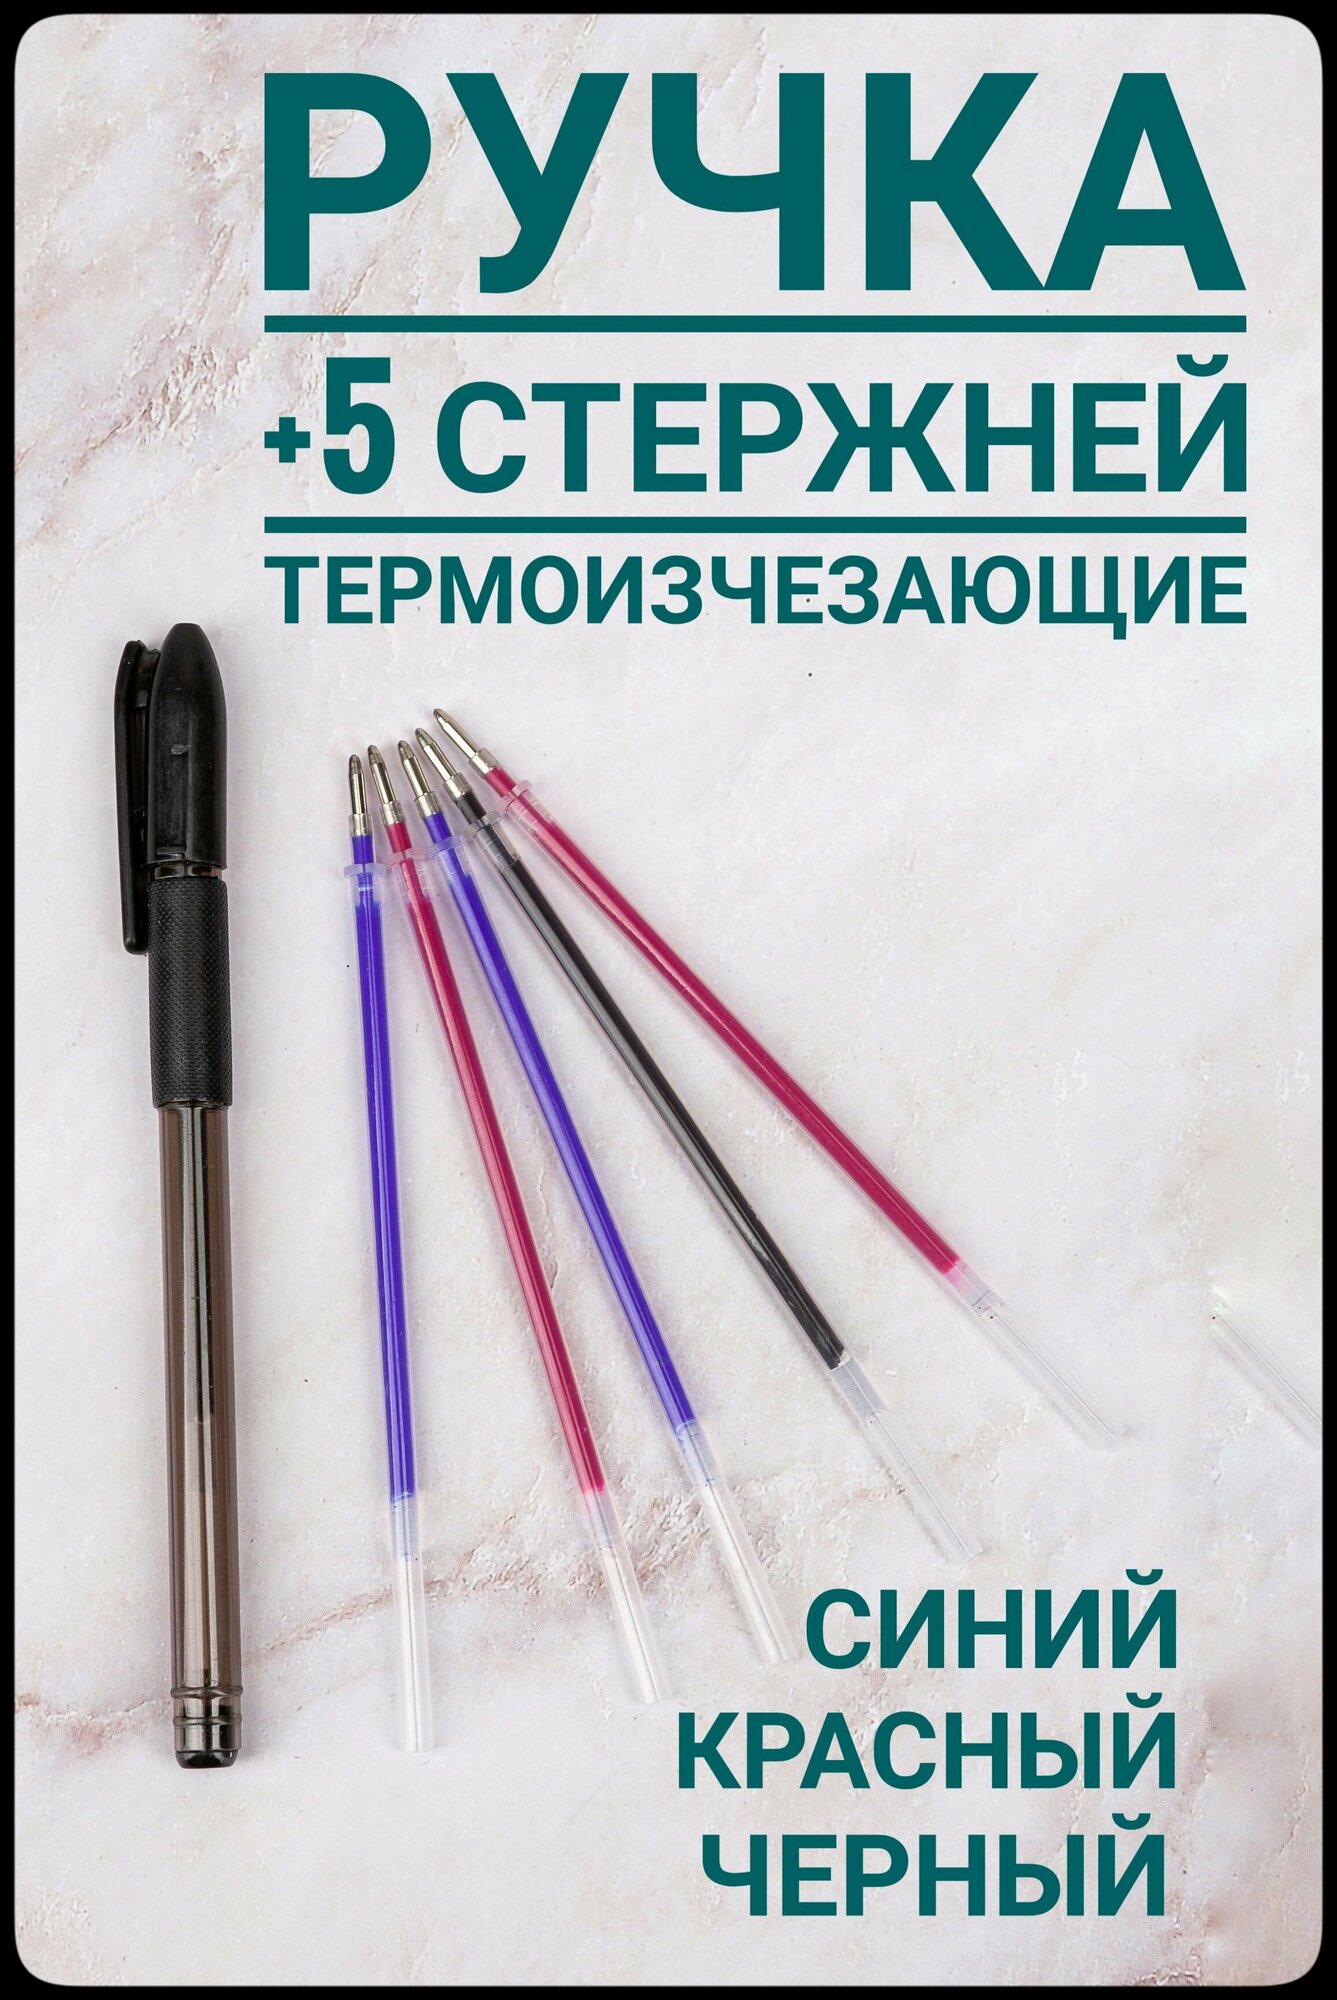 Ручка для ткани термоисчезающая с комплектом стержней, цвет красный/ синий/ черный для шитья и рукоделия.